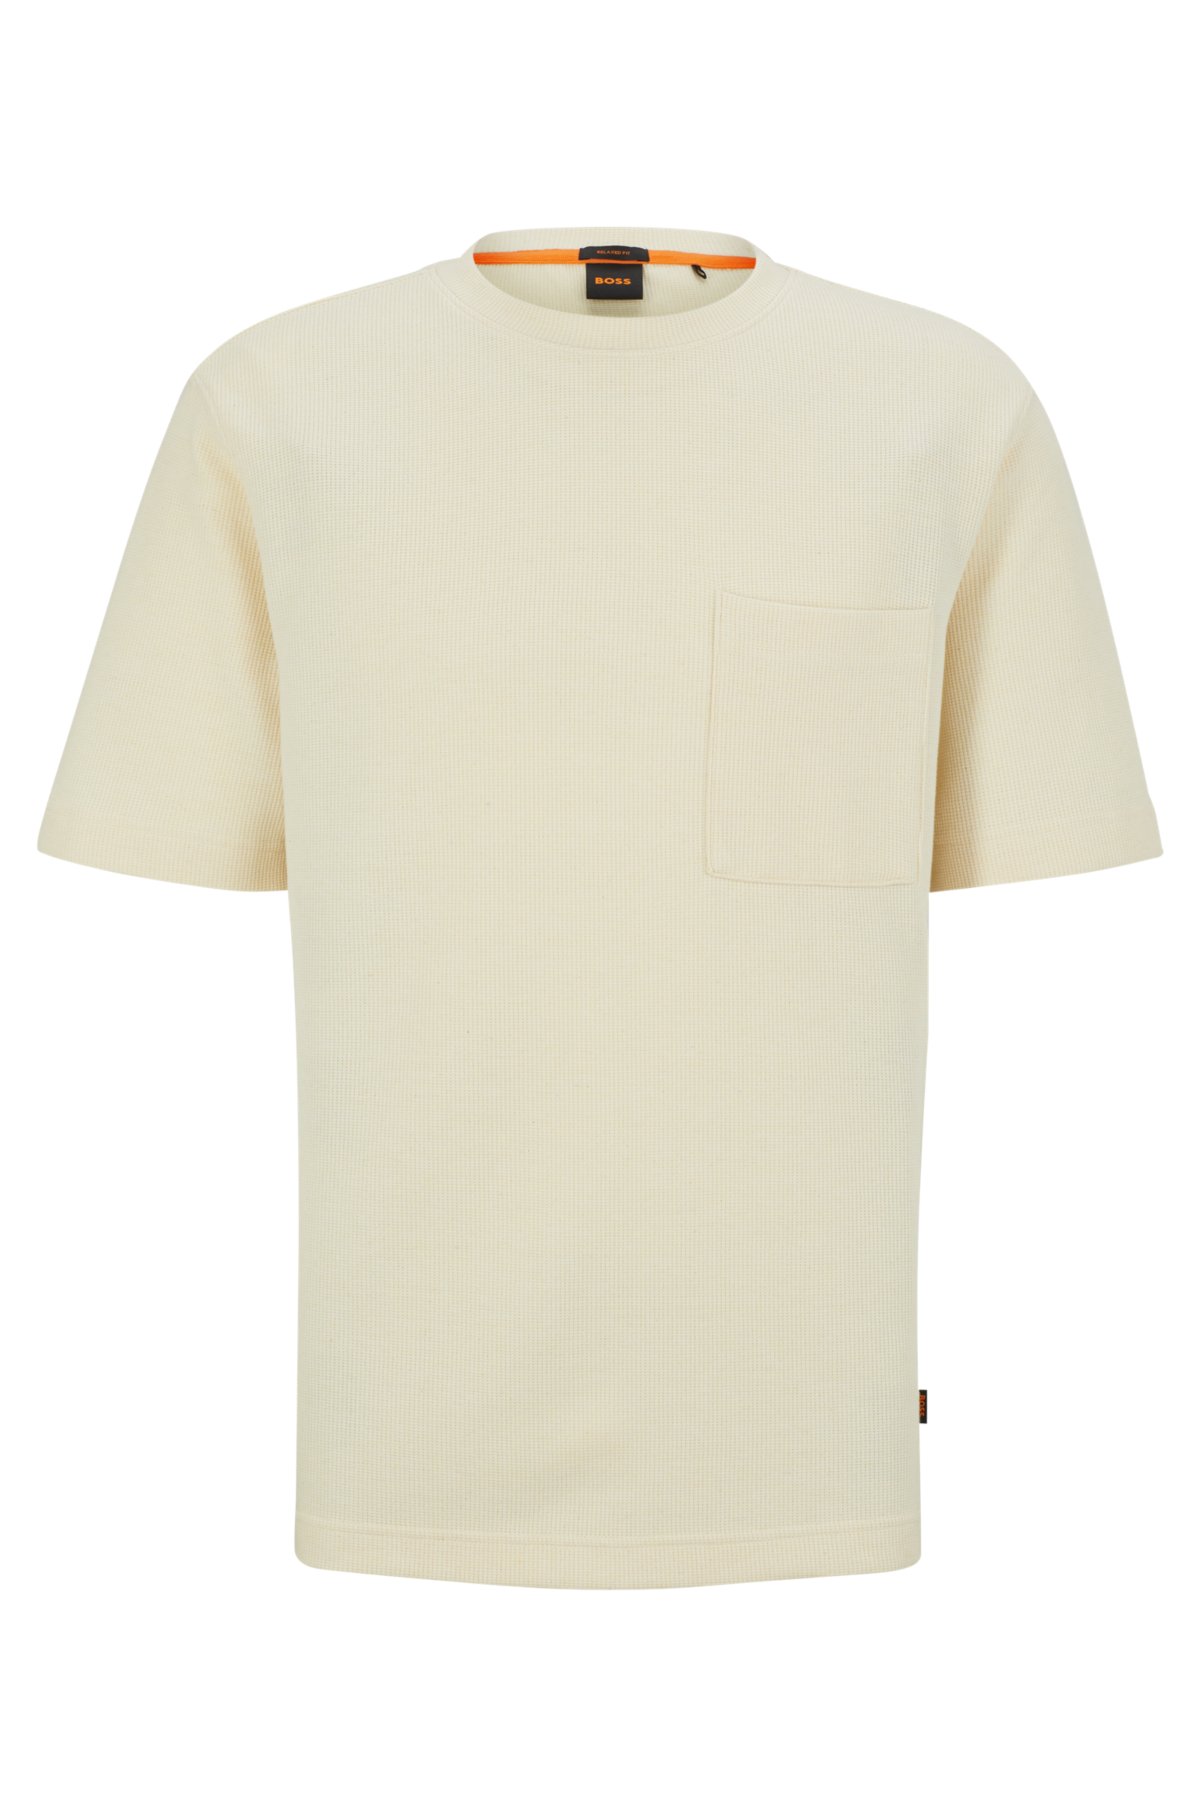 Louis Vuitton Logo Chain T-Shirt Tops Women Size XL White Cotton